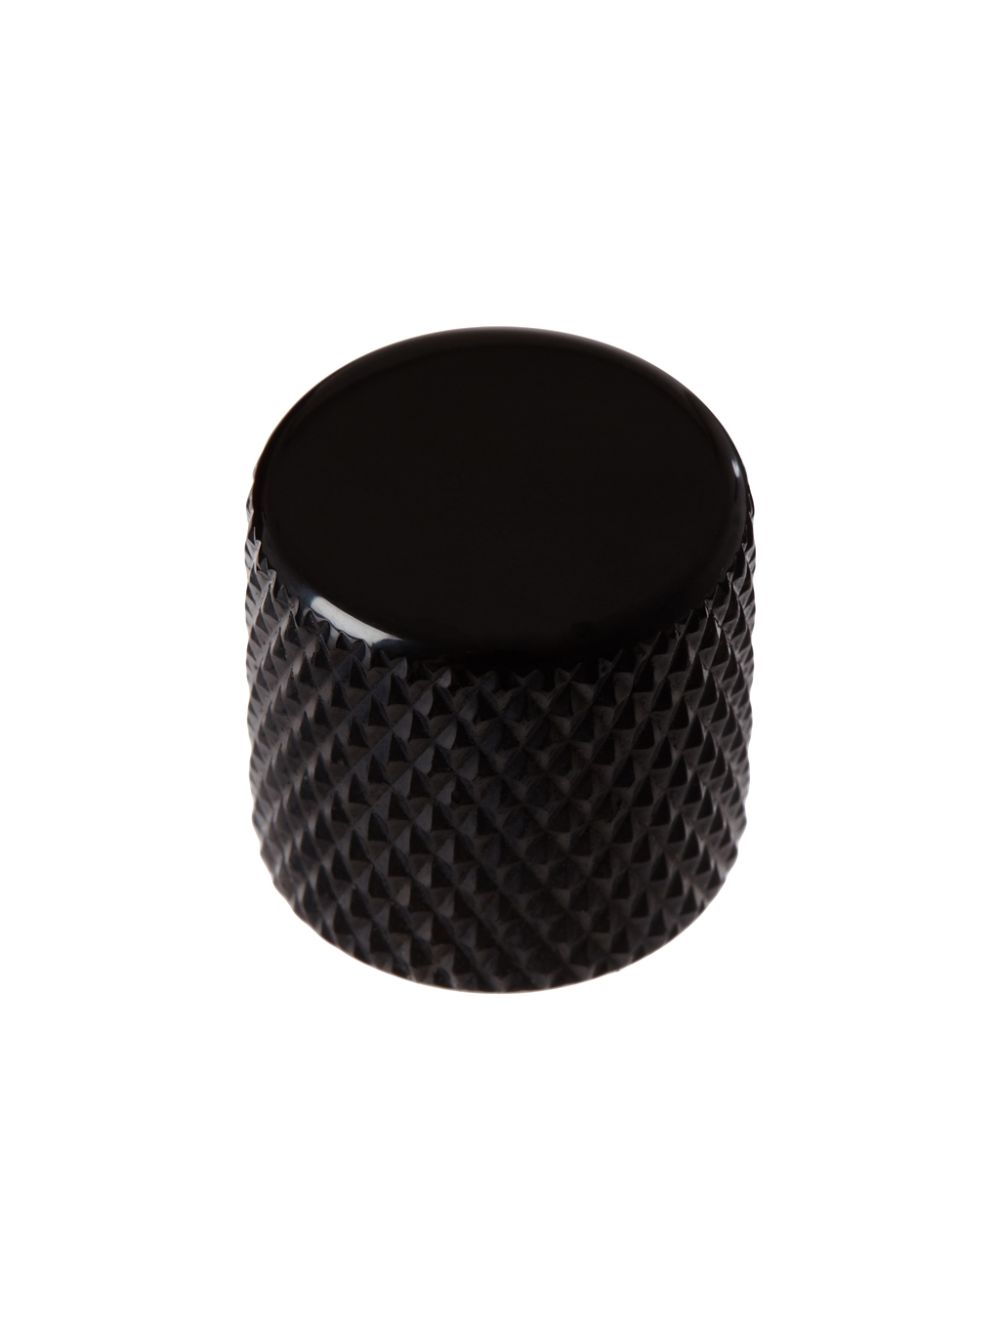 Bouton cylindrique en métal avec vis de blocage - Noir